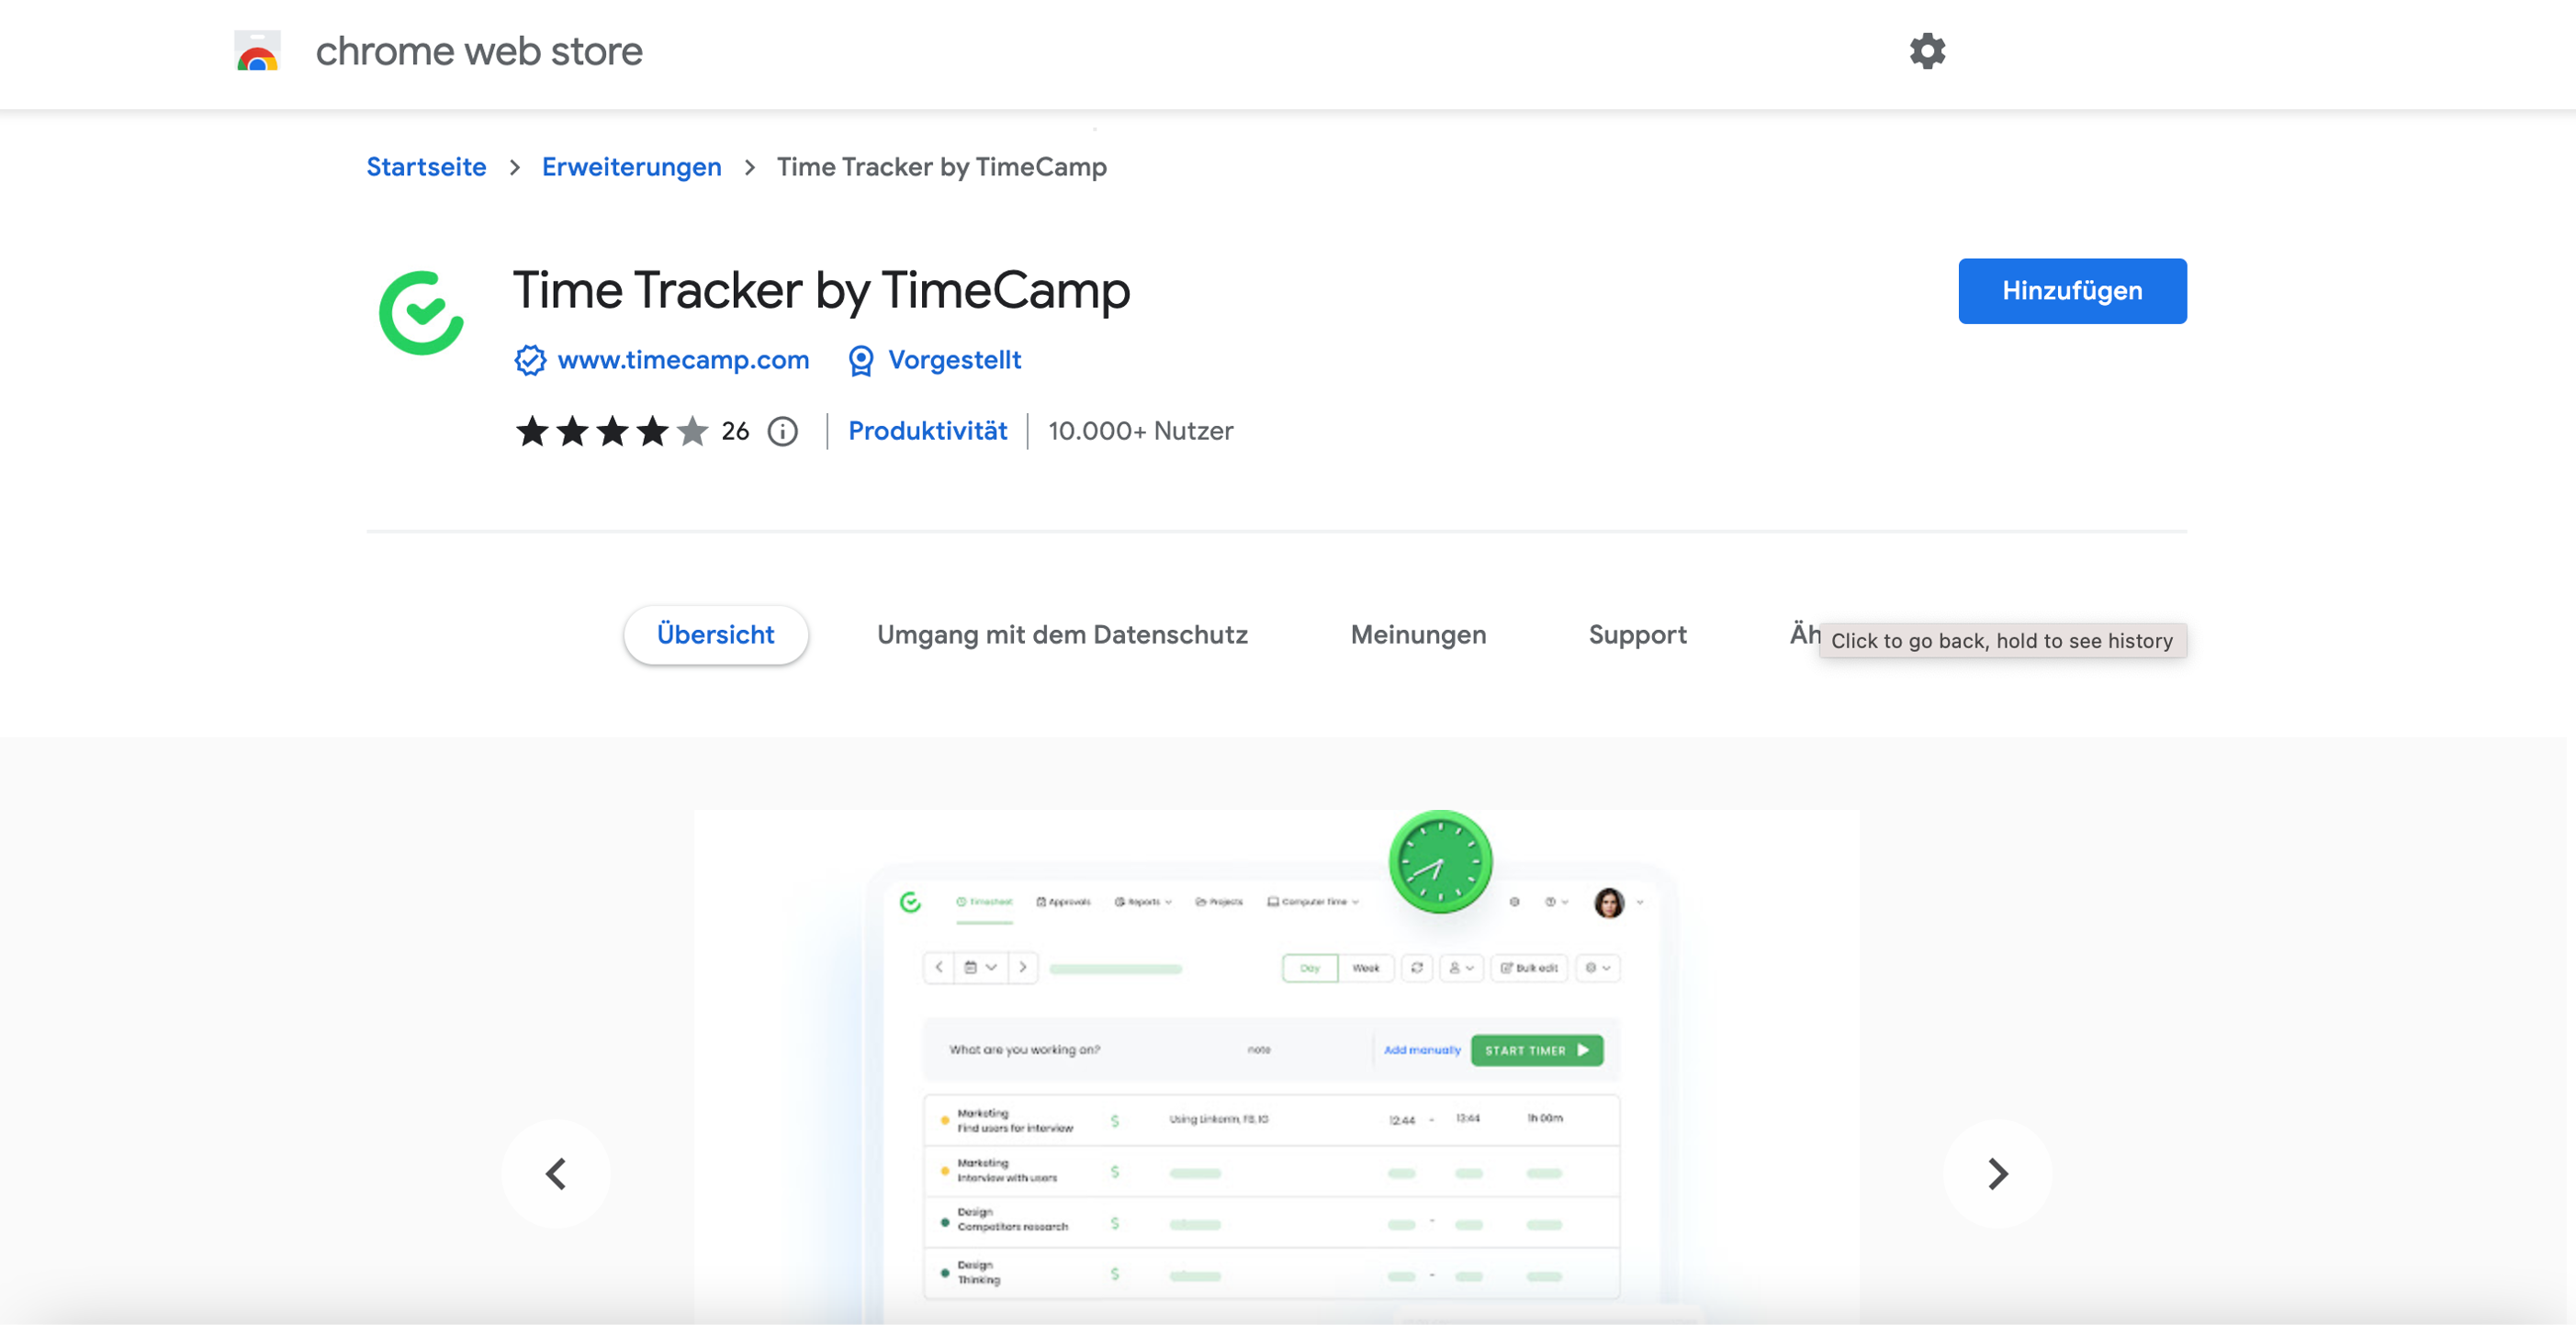 Extension de TimeCamp dans la boutique Google Chrome